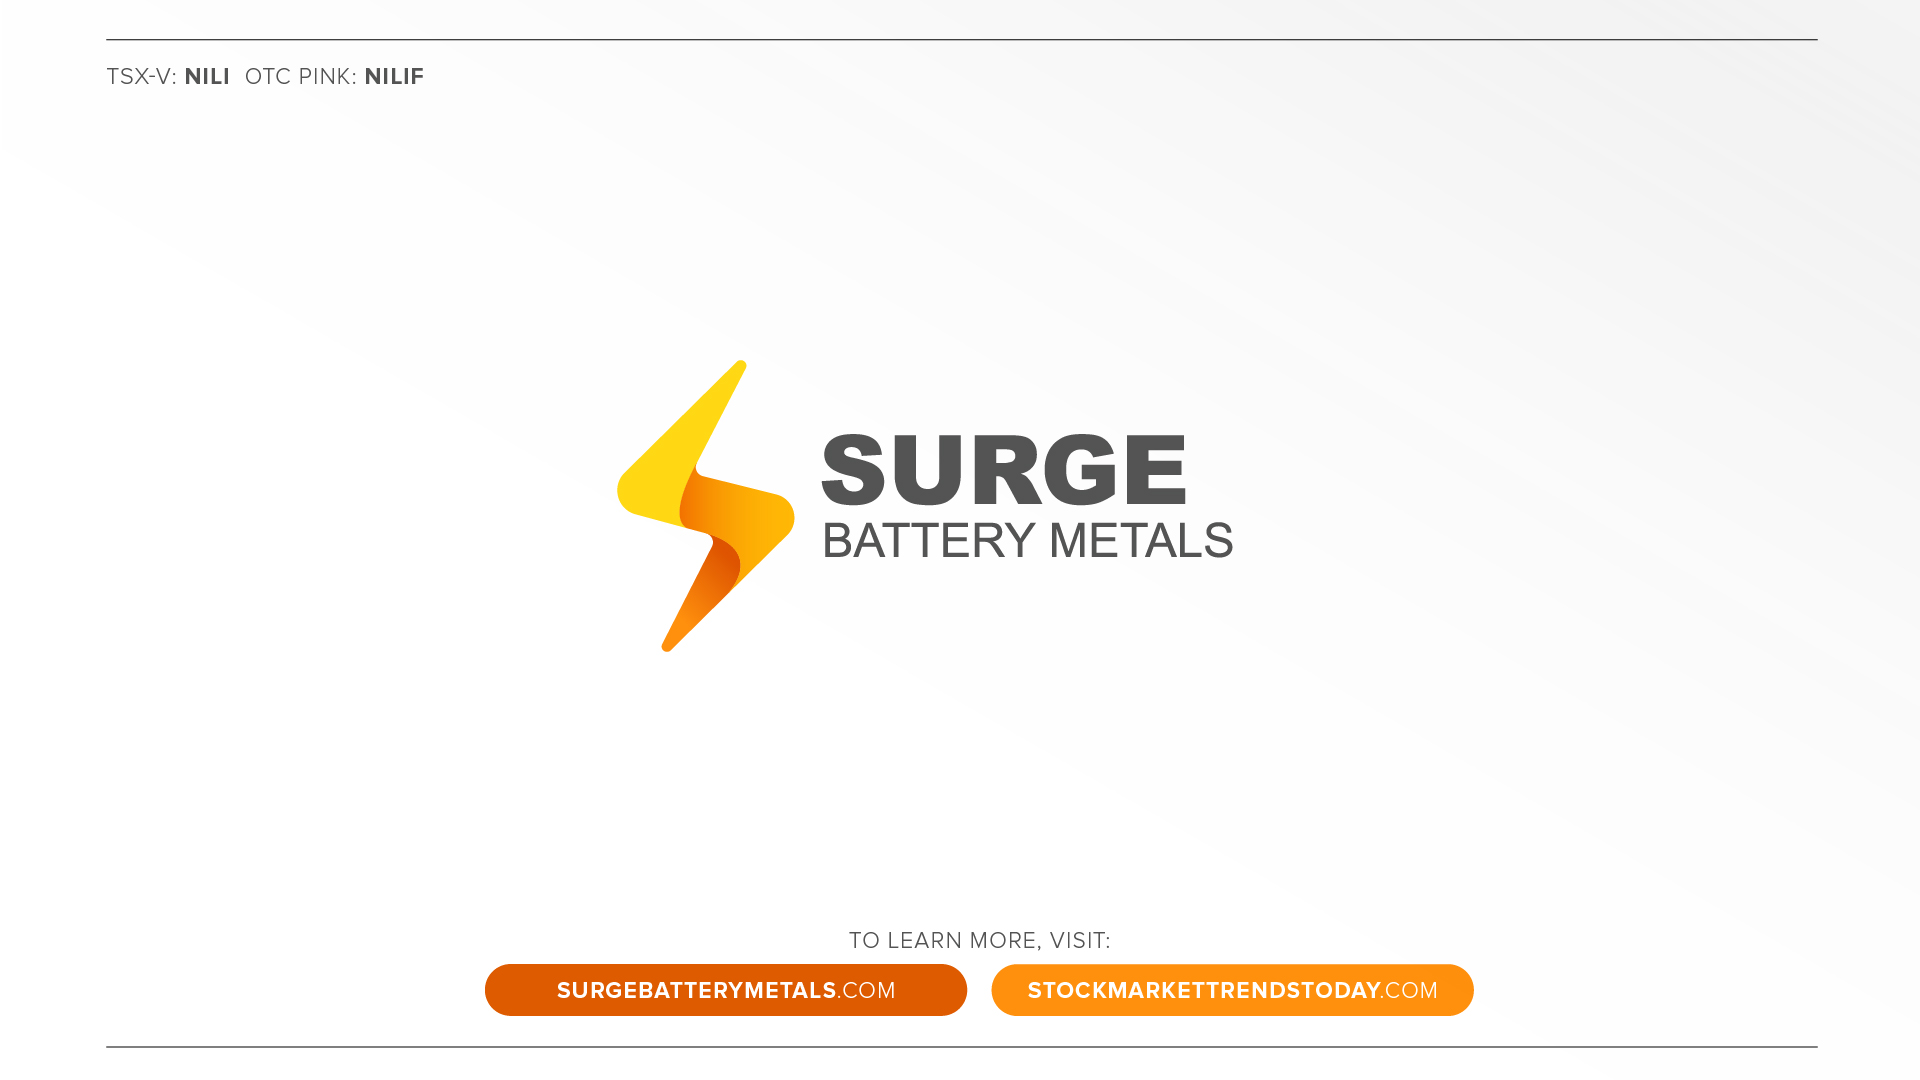 Surge Battery Metals Logo, stock symbols, website.